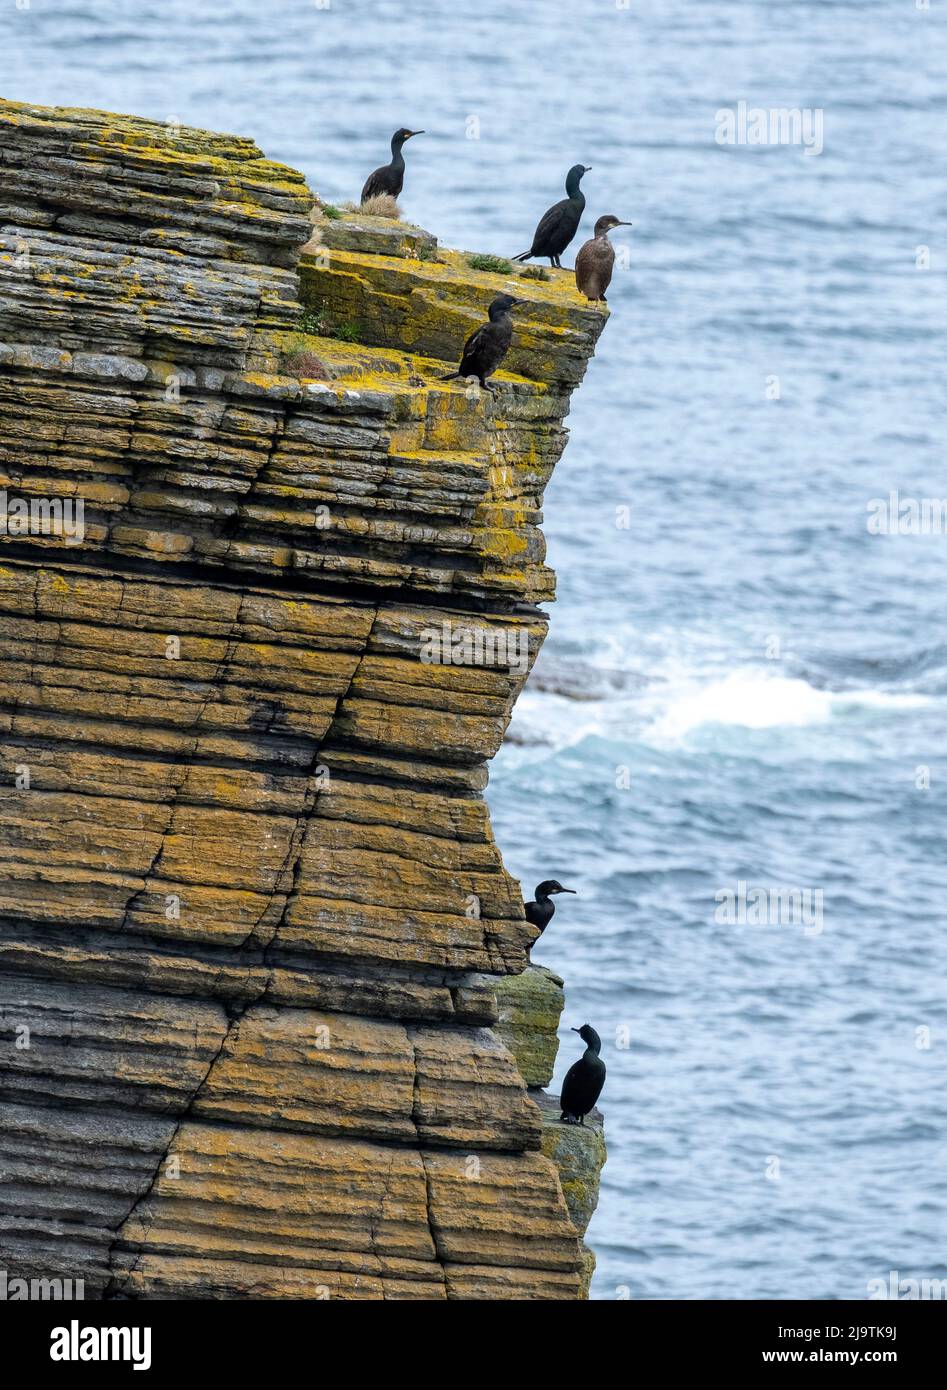 Shags, Gulosus aristotelis sulla scogliera in cima alla riserva naturale di Mull Head, Deerness, Orkney continente, Isole Orkney, Scozia. Foto Stock